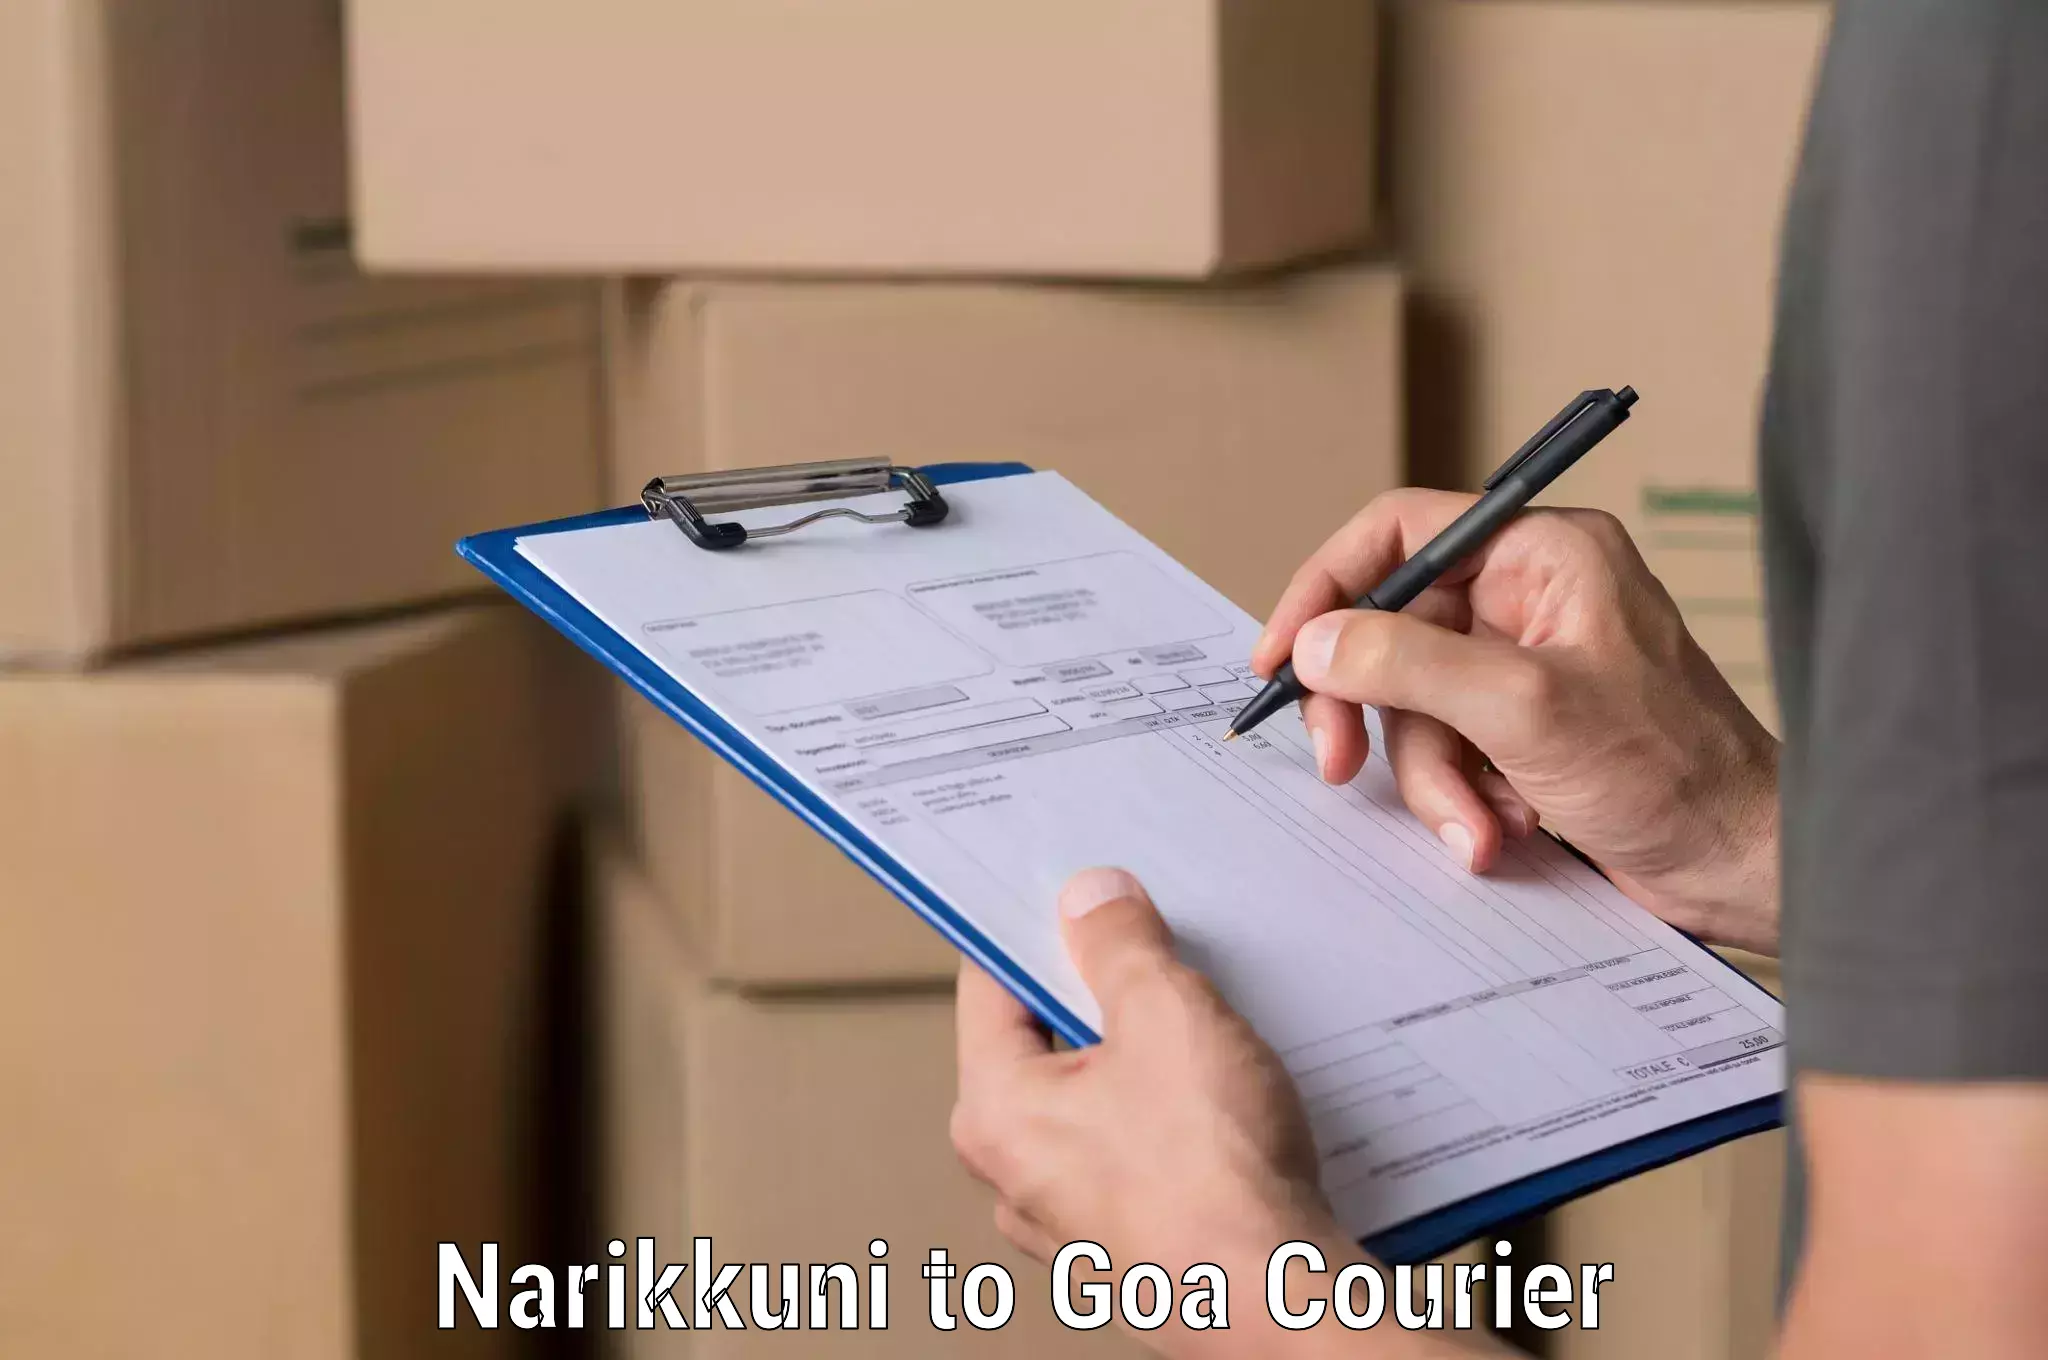 Fast delivery service Narikkuni to Goa